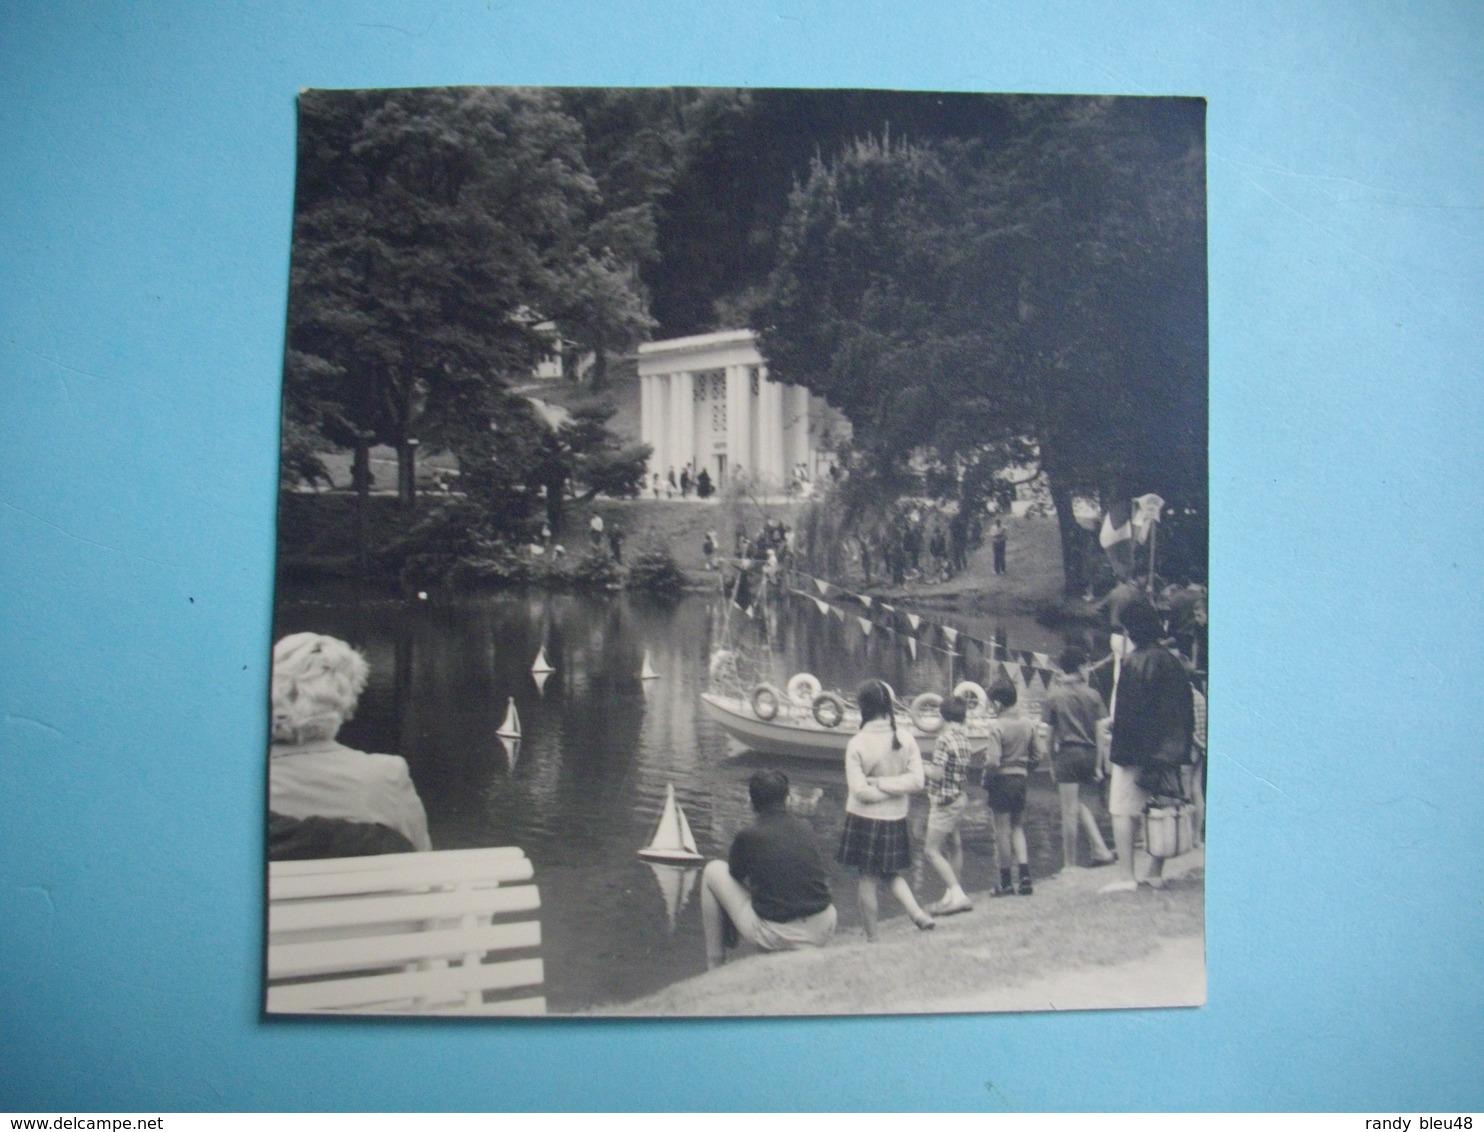 PHOTOGRAPHIE   LUCHON  -  31  - Concours De Voiliers Miniatures Au Bassin Des Quinconces  -   8,8  X  9  Cms - 1964 - Luchon